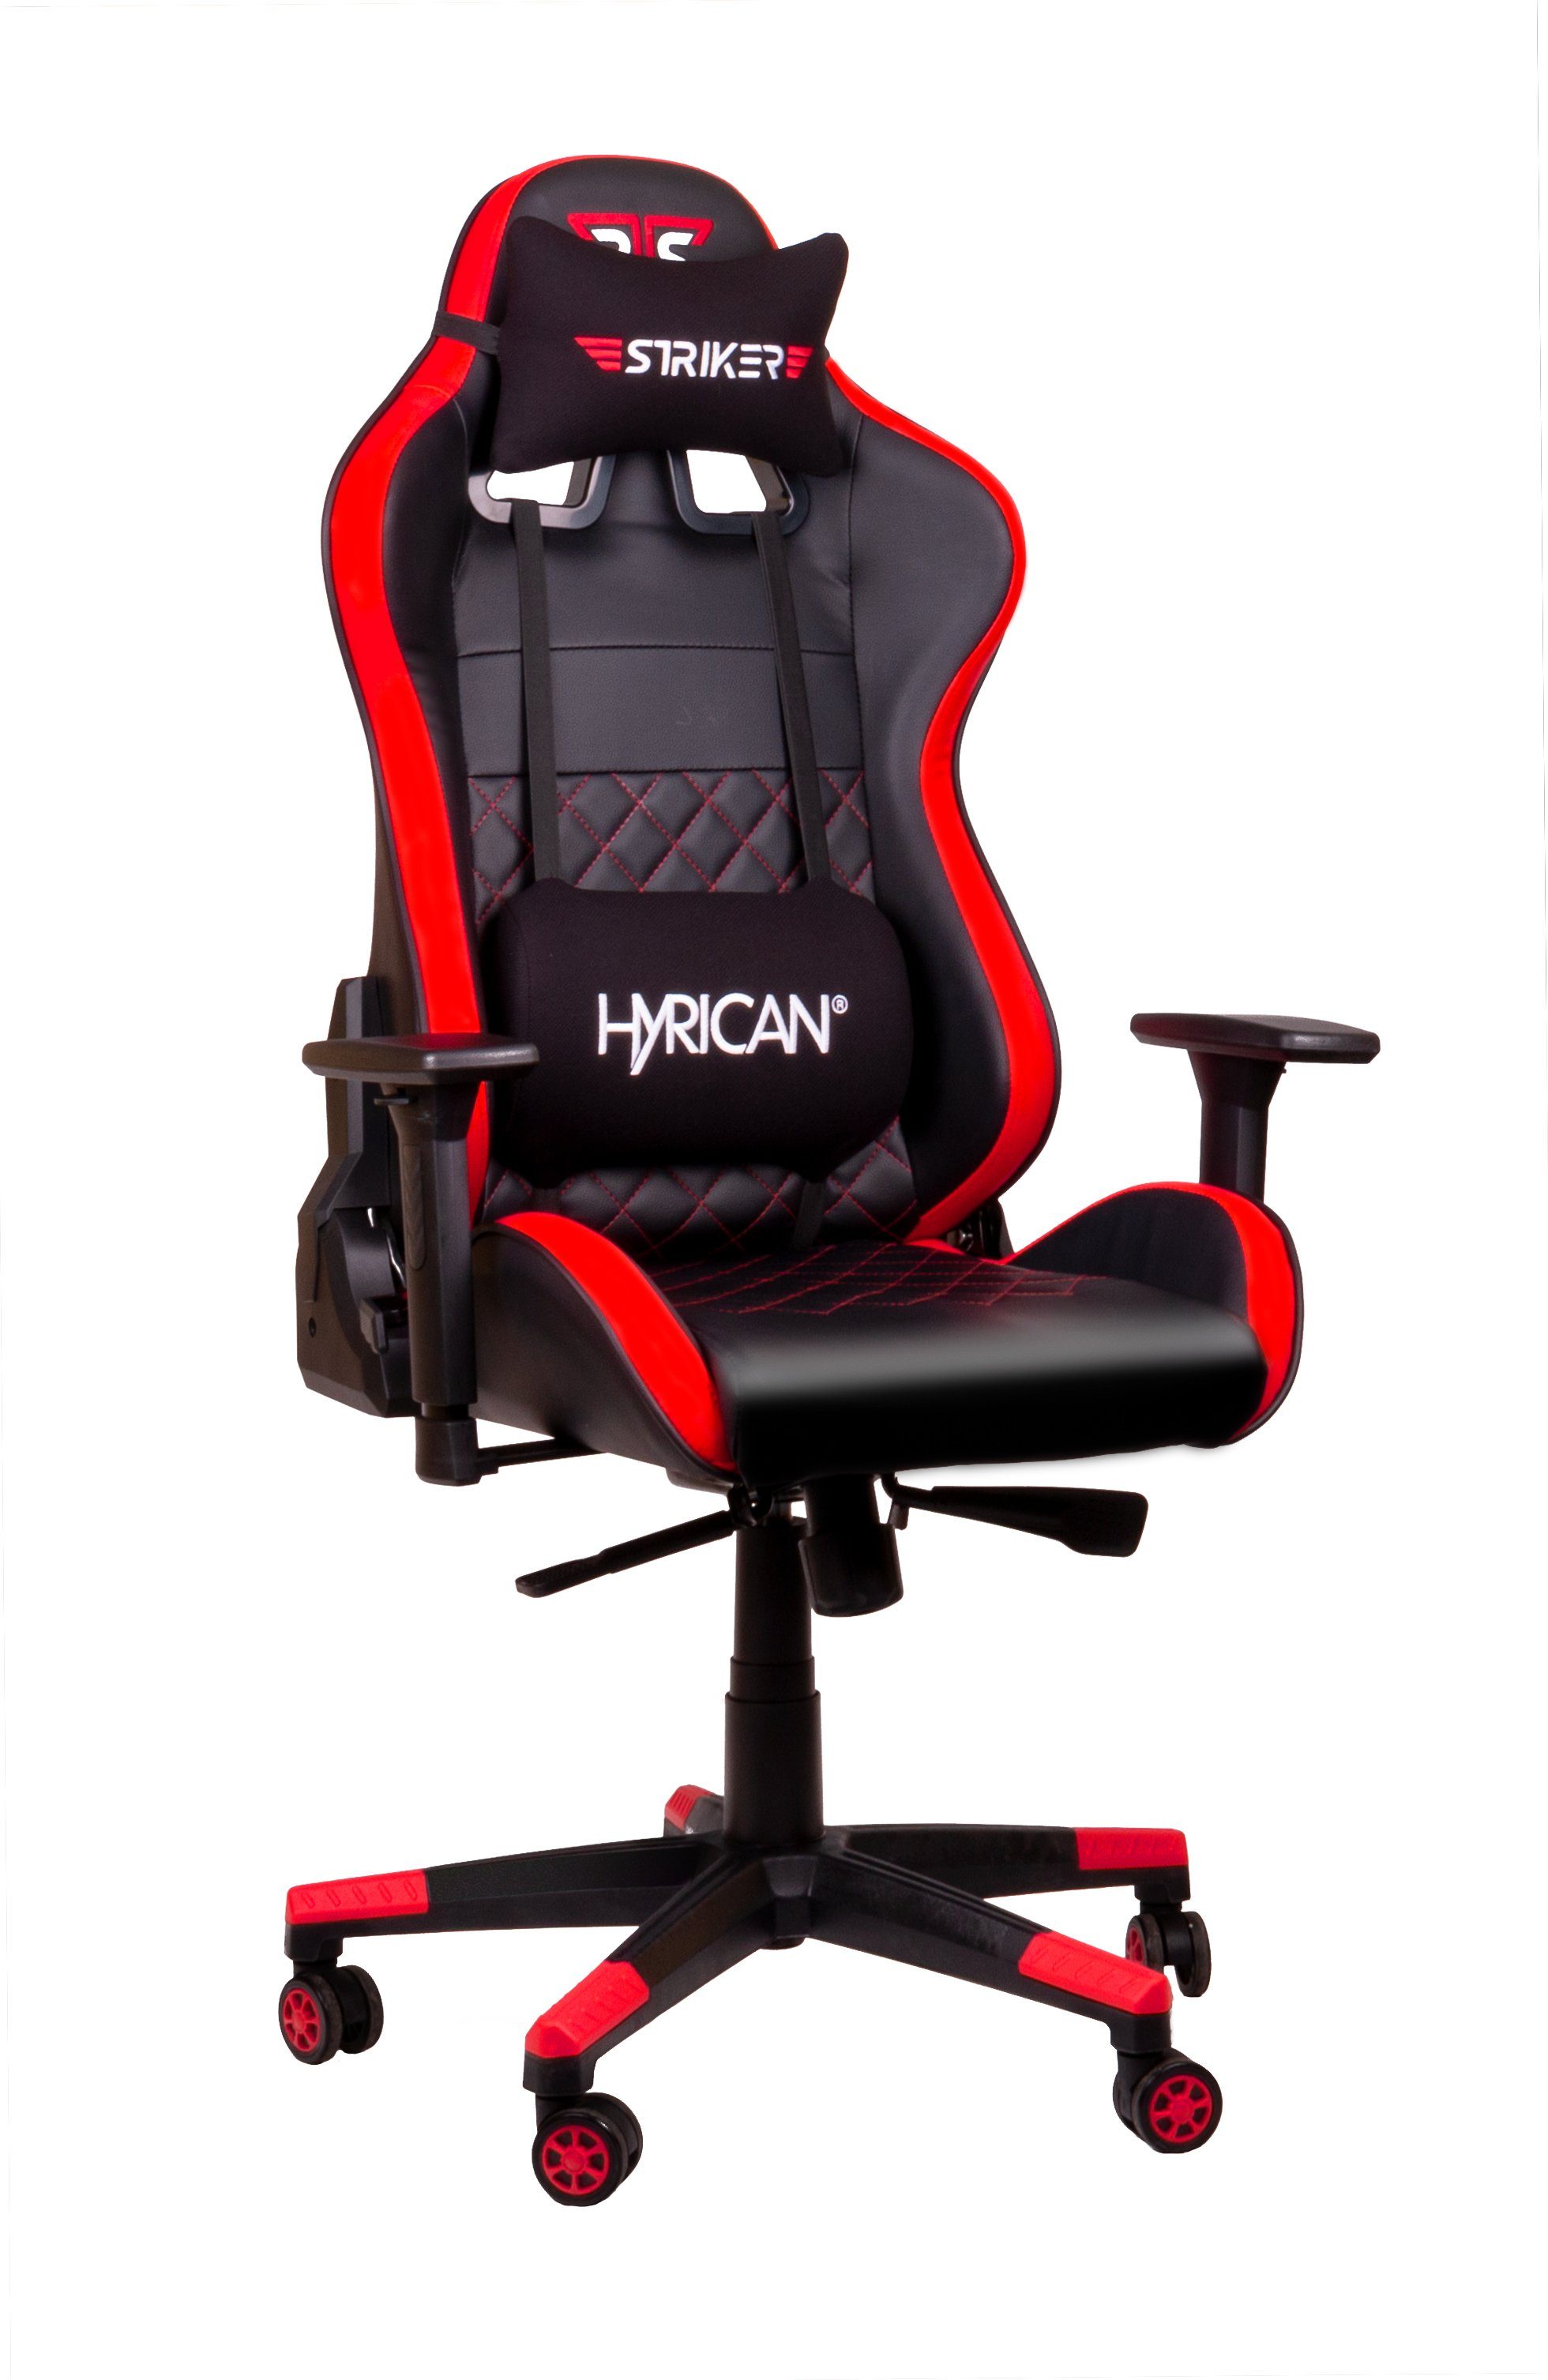 Hyrican Gaming-Stuhl "Striker Code Red XL" ergonomischer Gamingstuhl ,Schreibtischstuhl